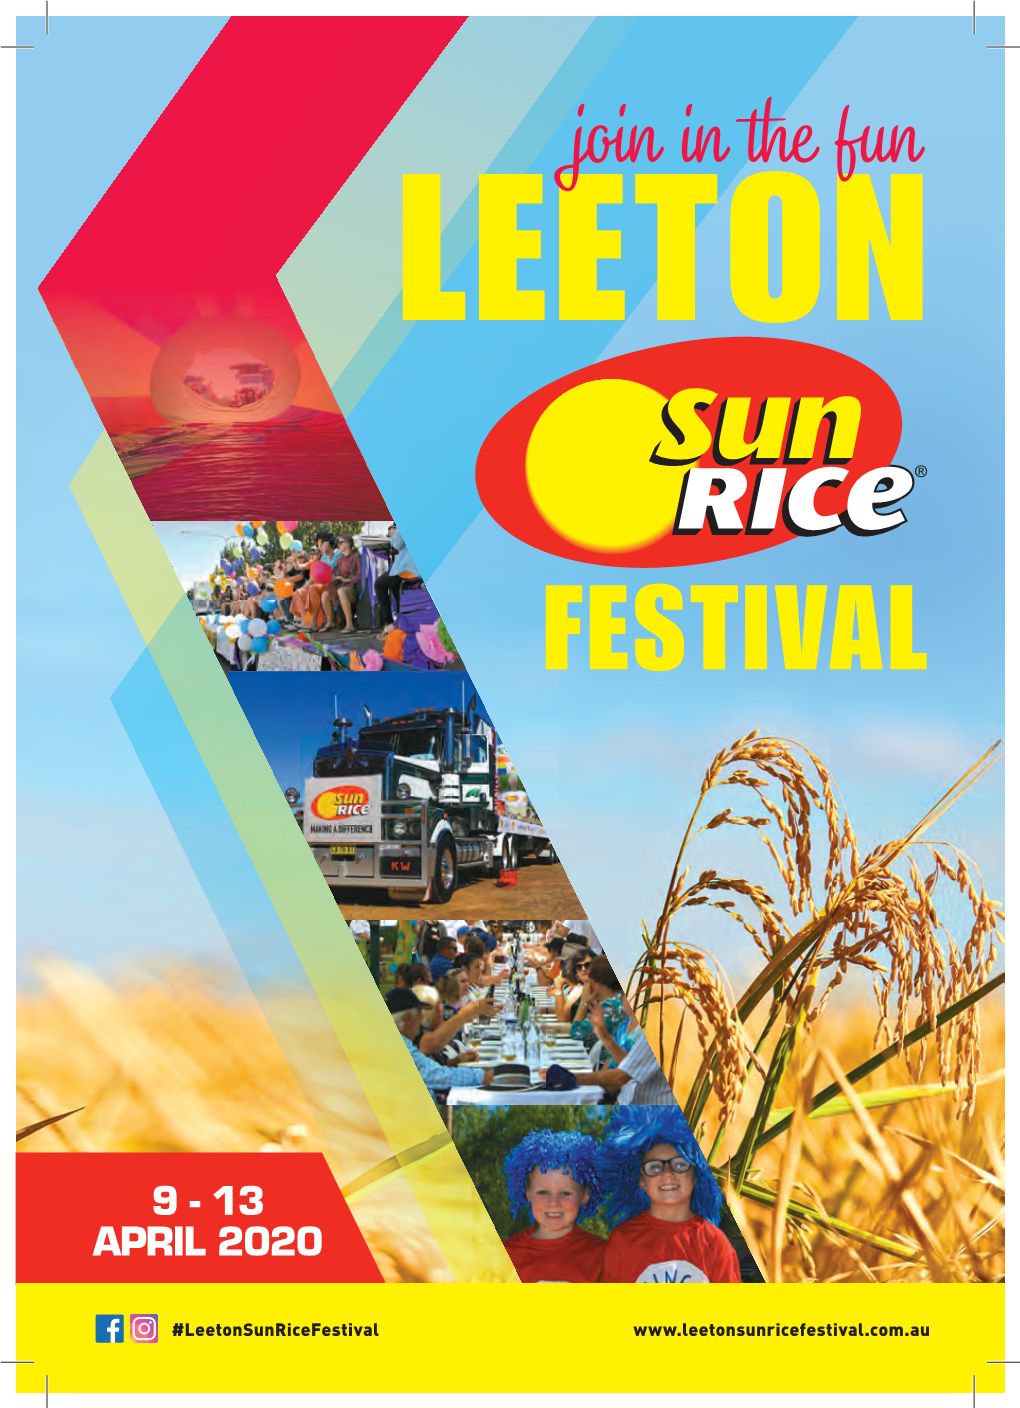 The 2020 Leeton Sunrice Festival Program